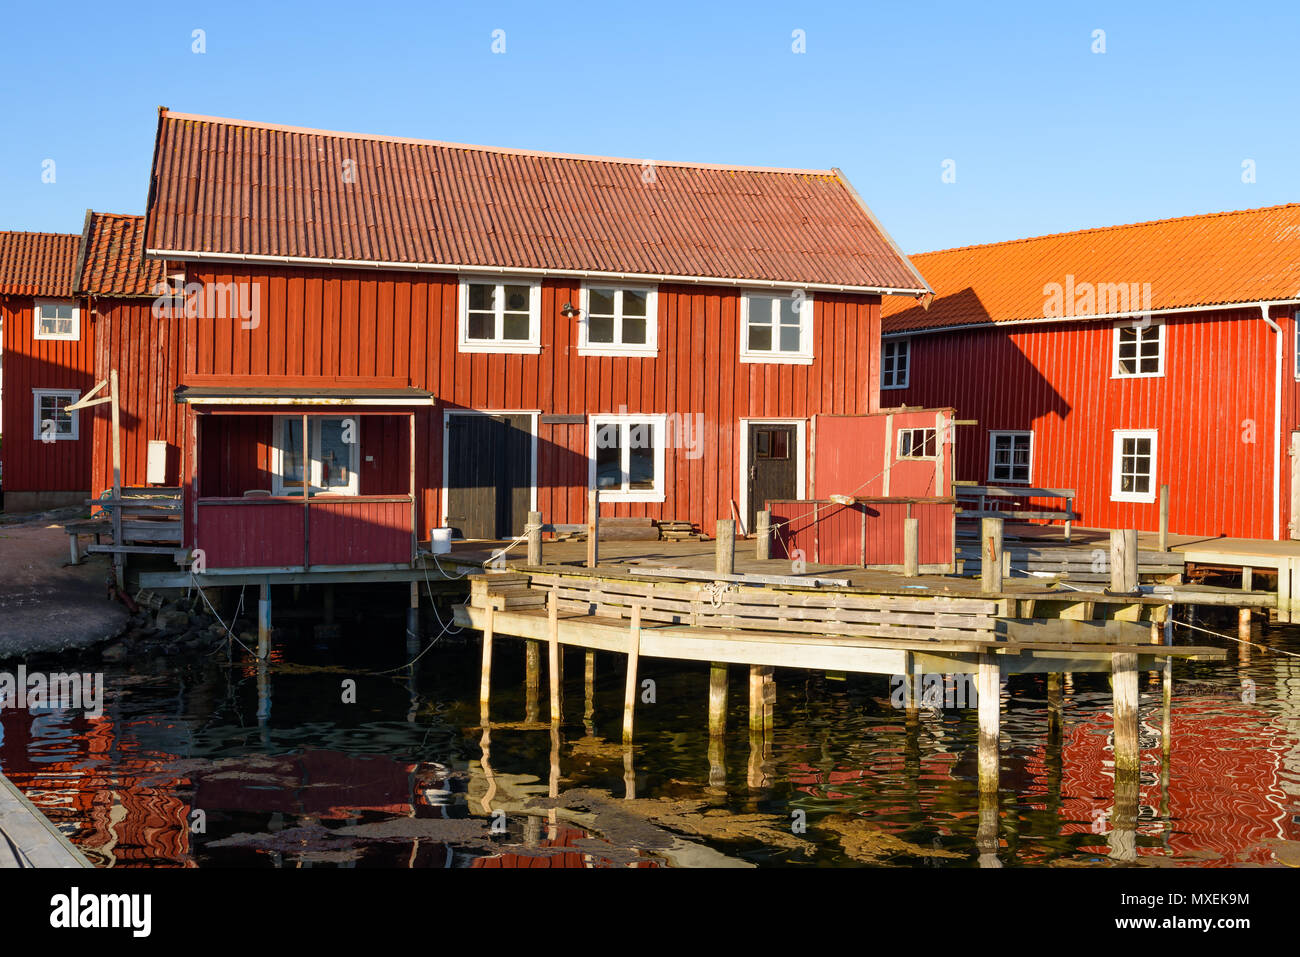 Vieux bâtiments en bois dans le quartier du port de la station balnéaire de Mollosund sur Orust, Suède. Banque D'Images